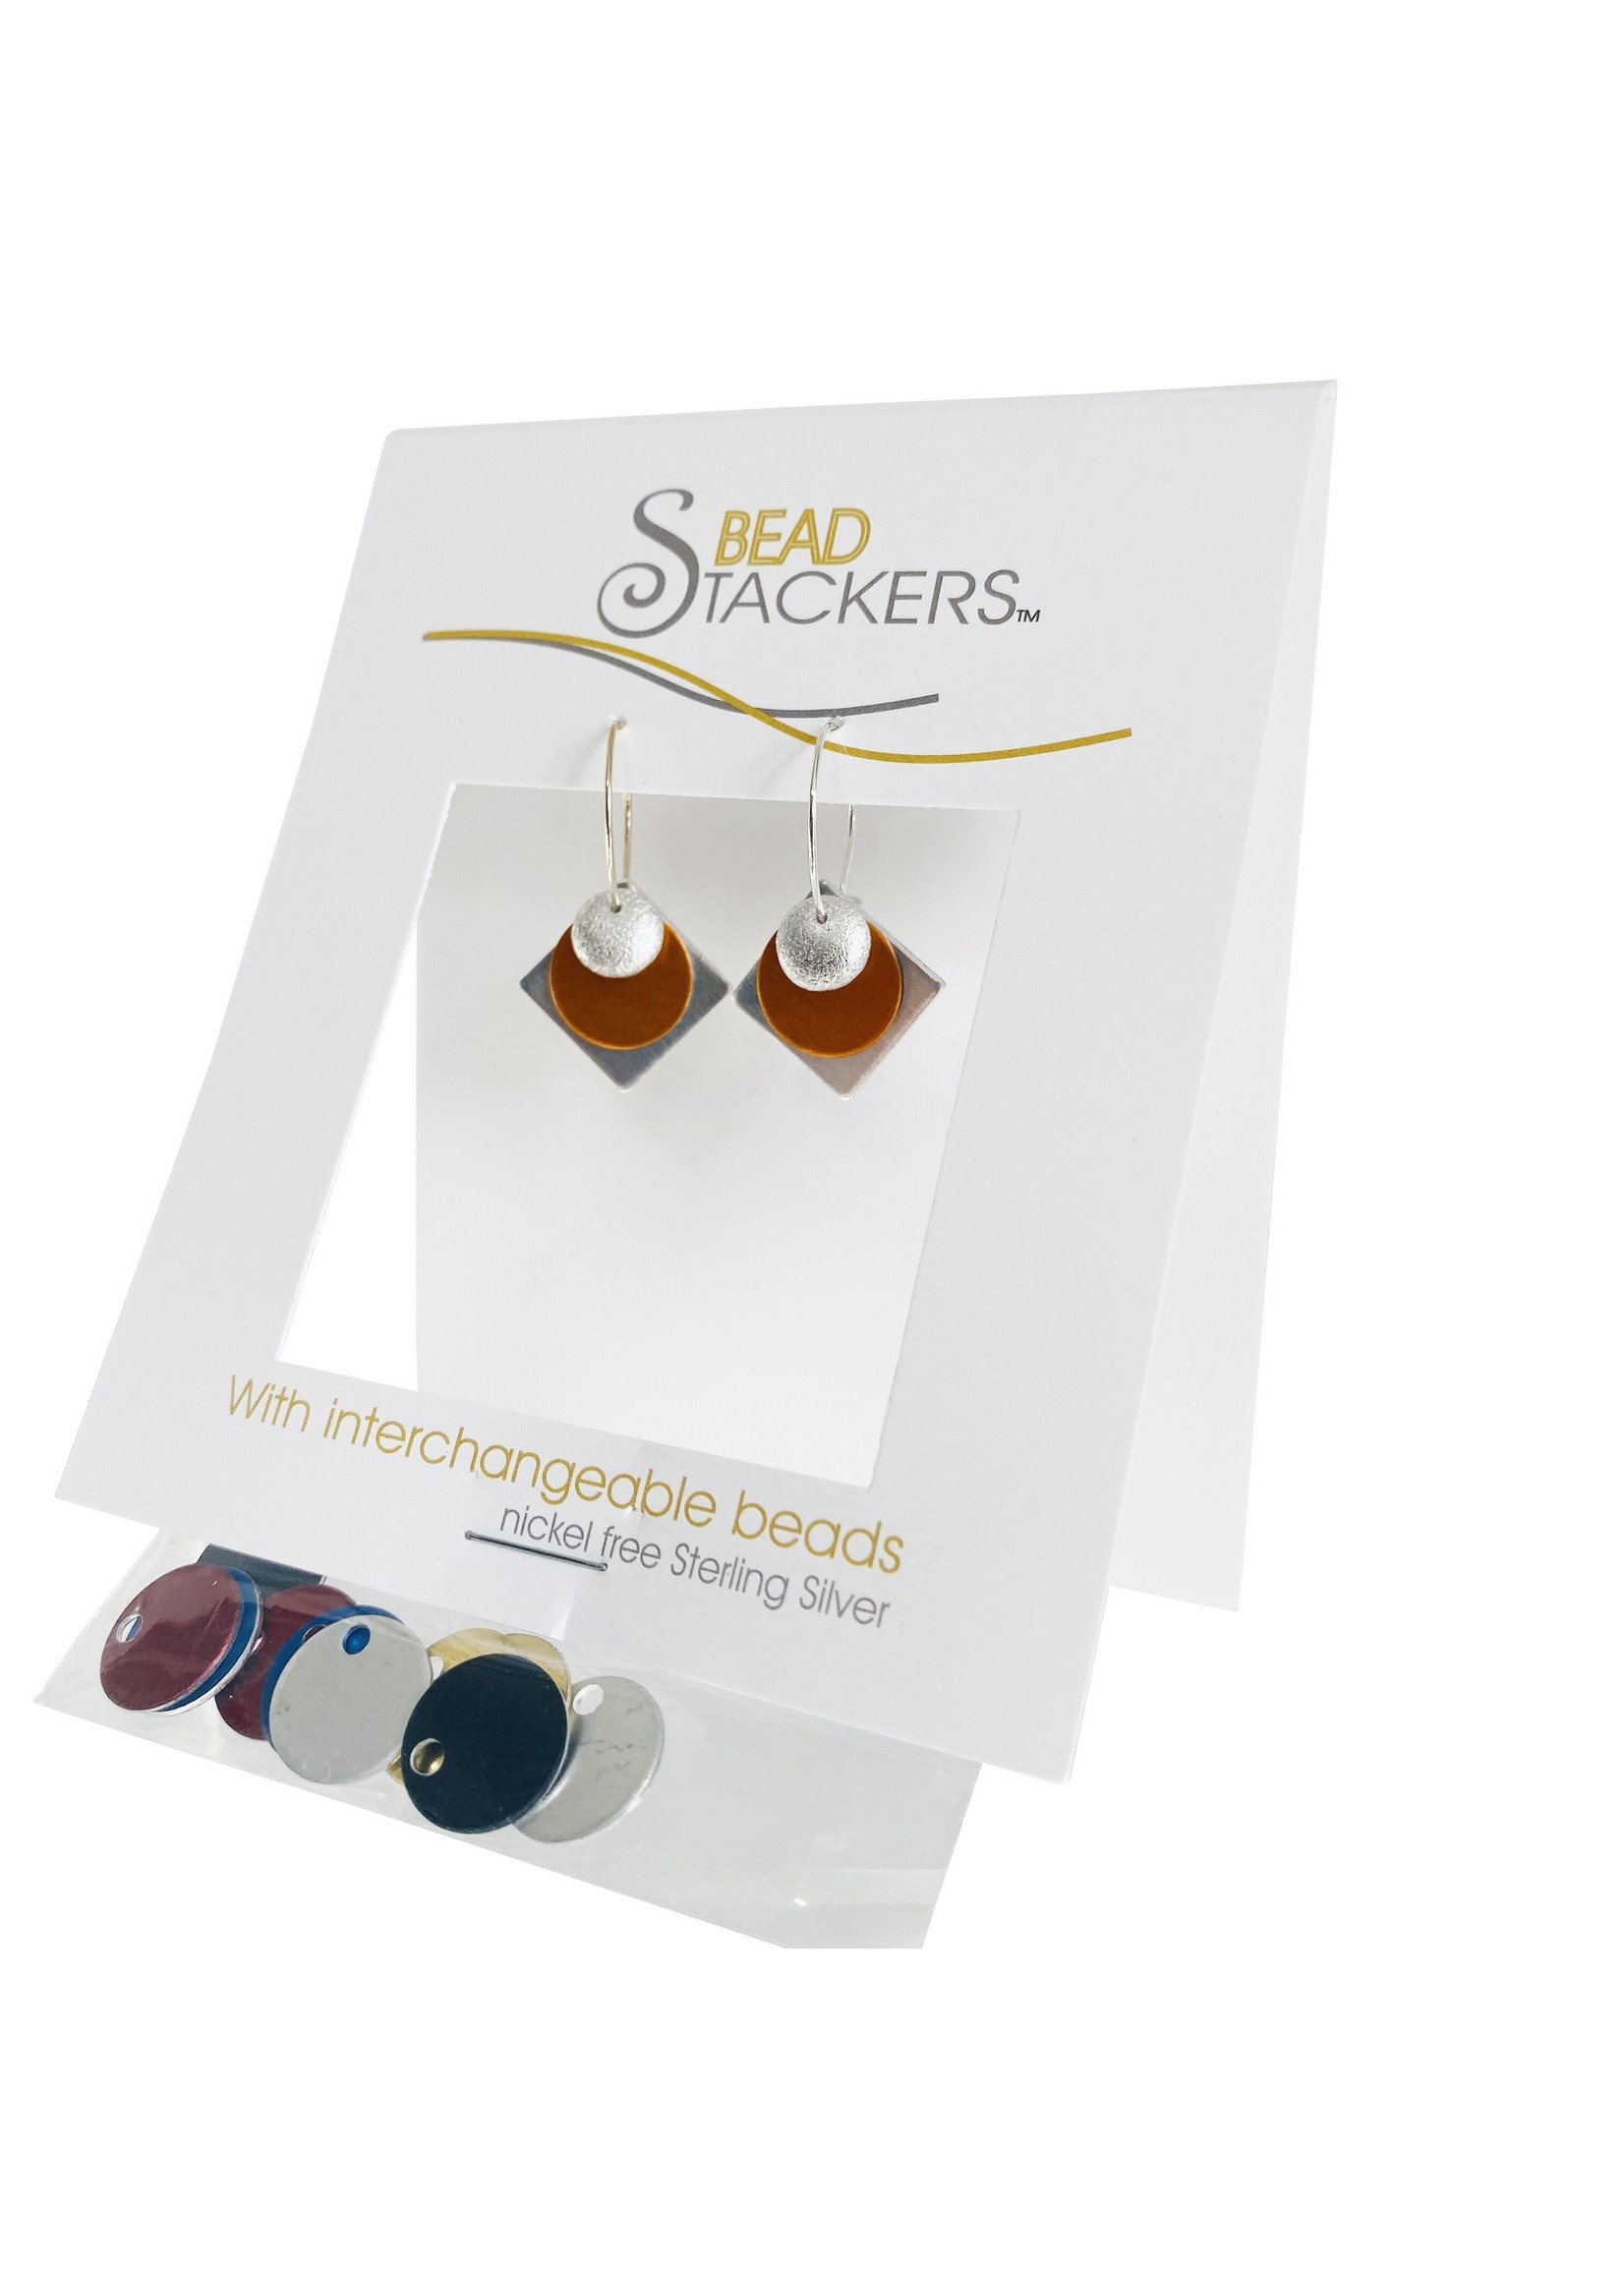 Beadstackers